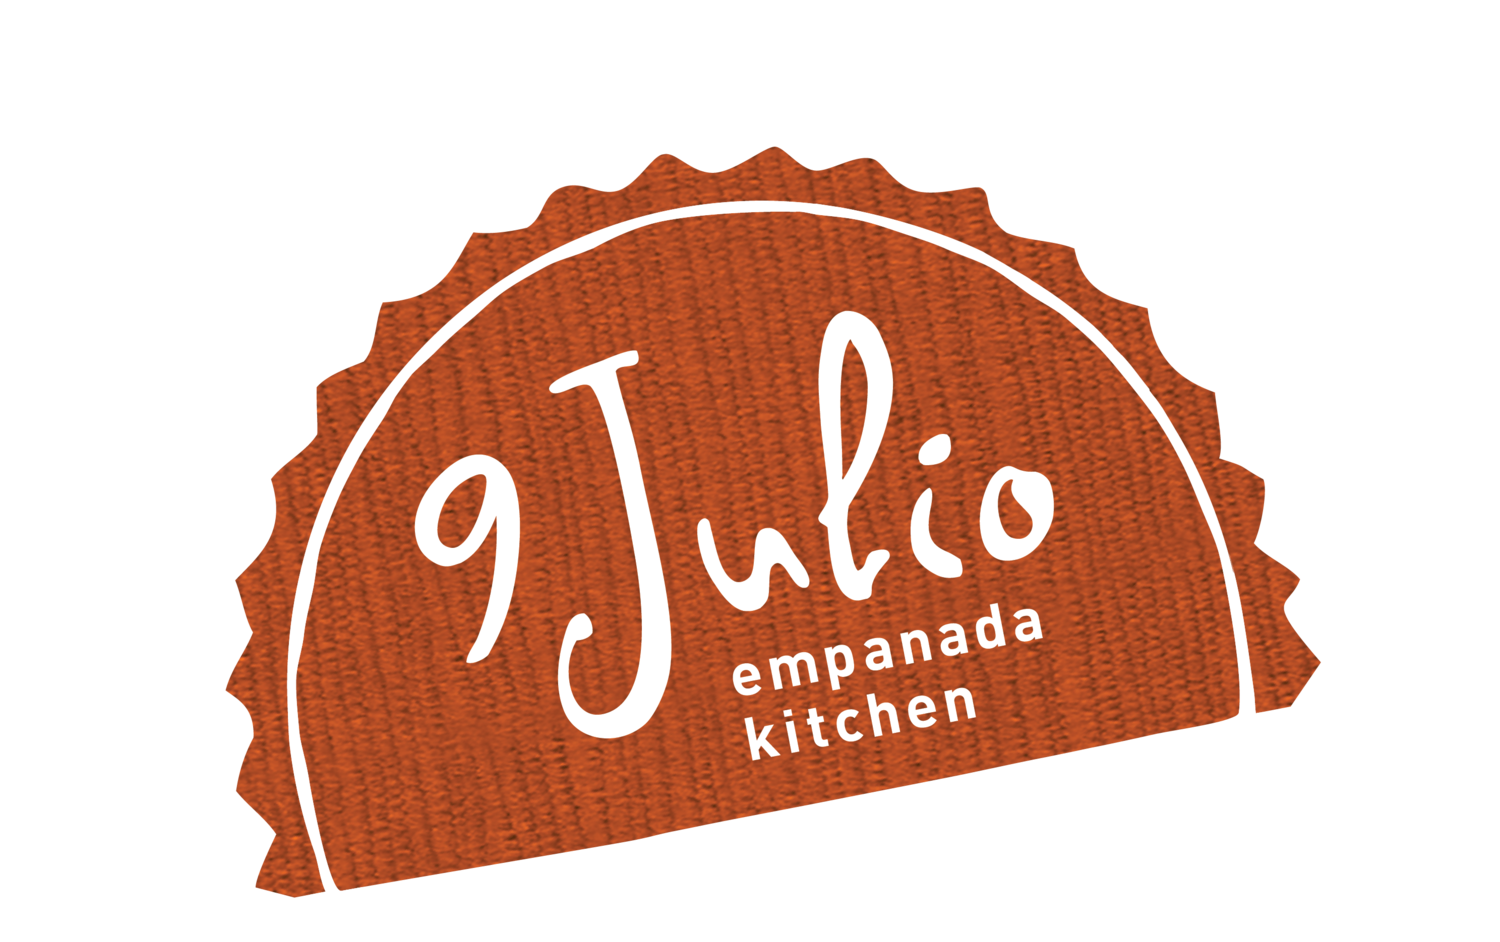 9 Julio Empanada Kitchen